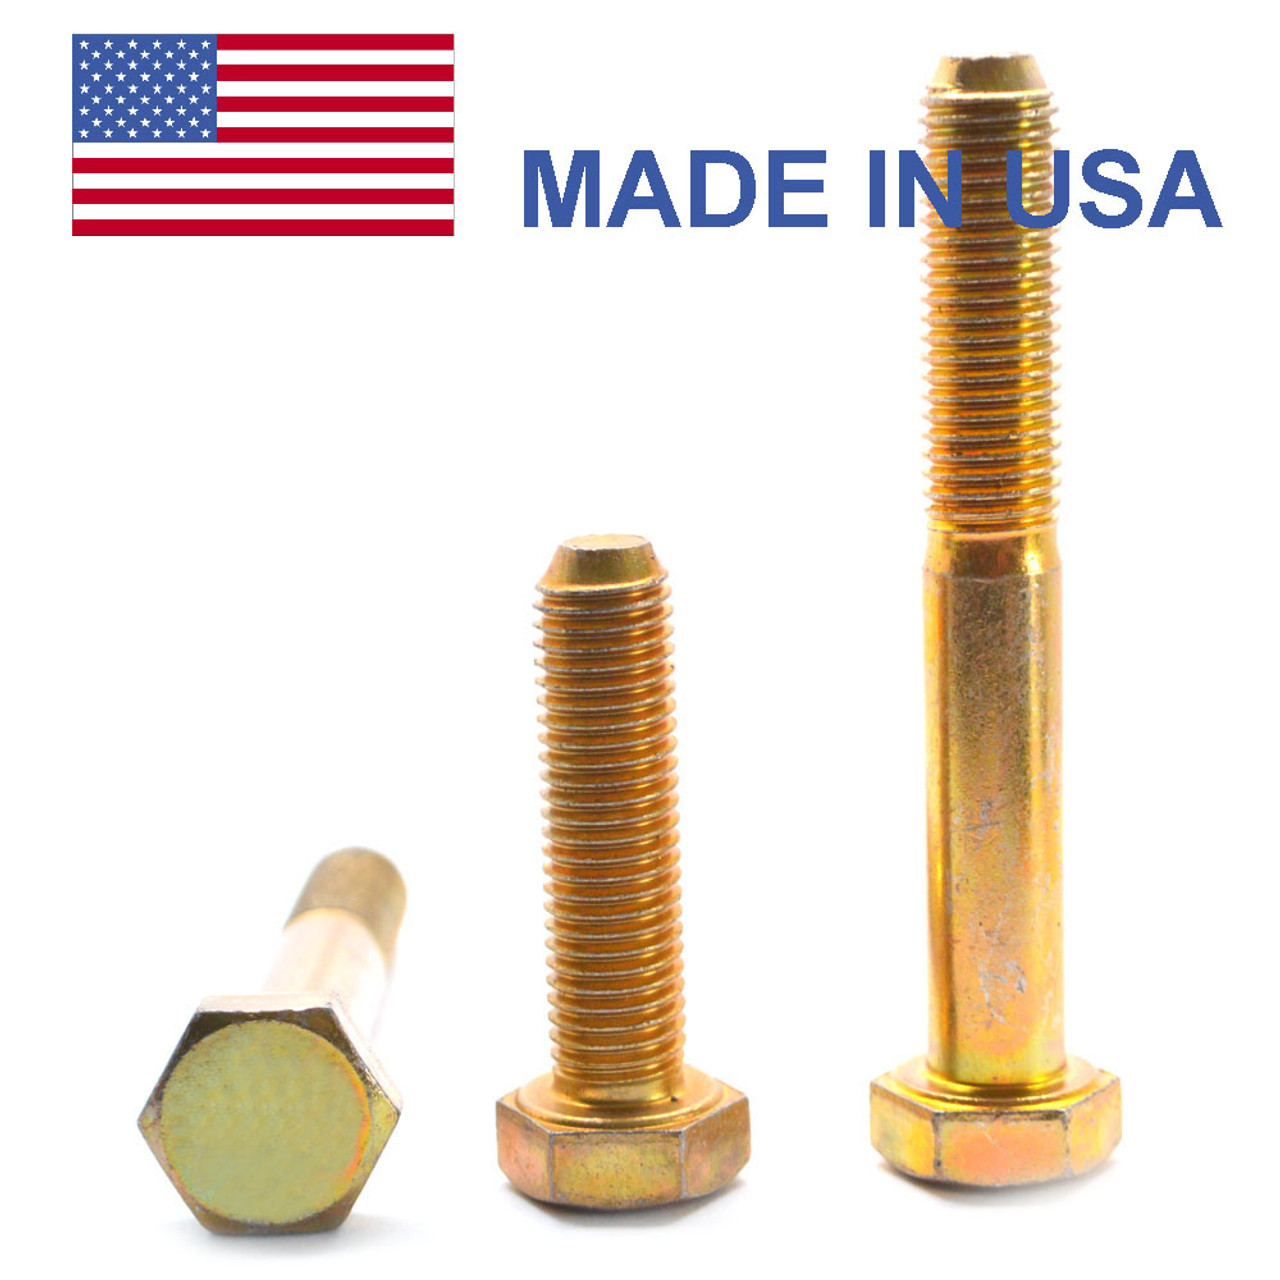 5/16"-24 x 3/4" (FT) Fine Thread Grade 8 Hex Cap Screw (Bolt) - USA Alloy Steel Yellow Zinc Plated